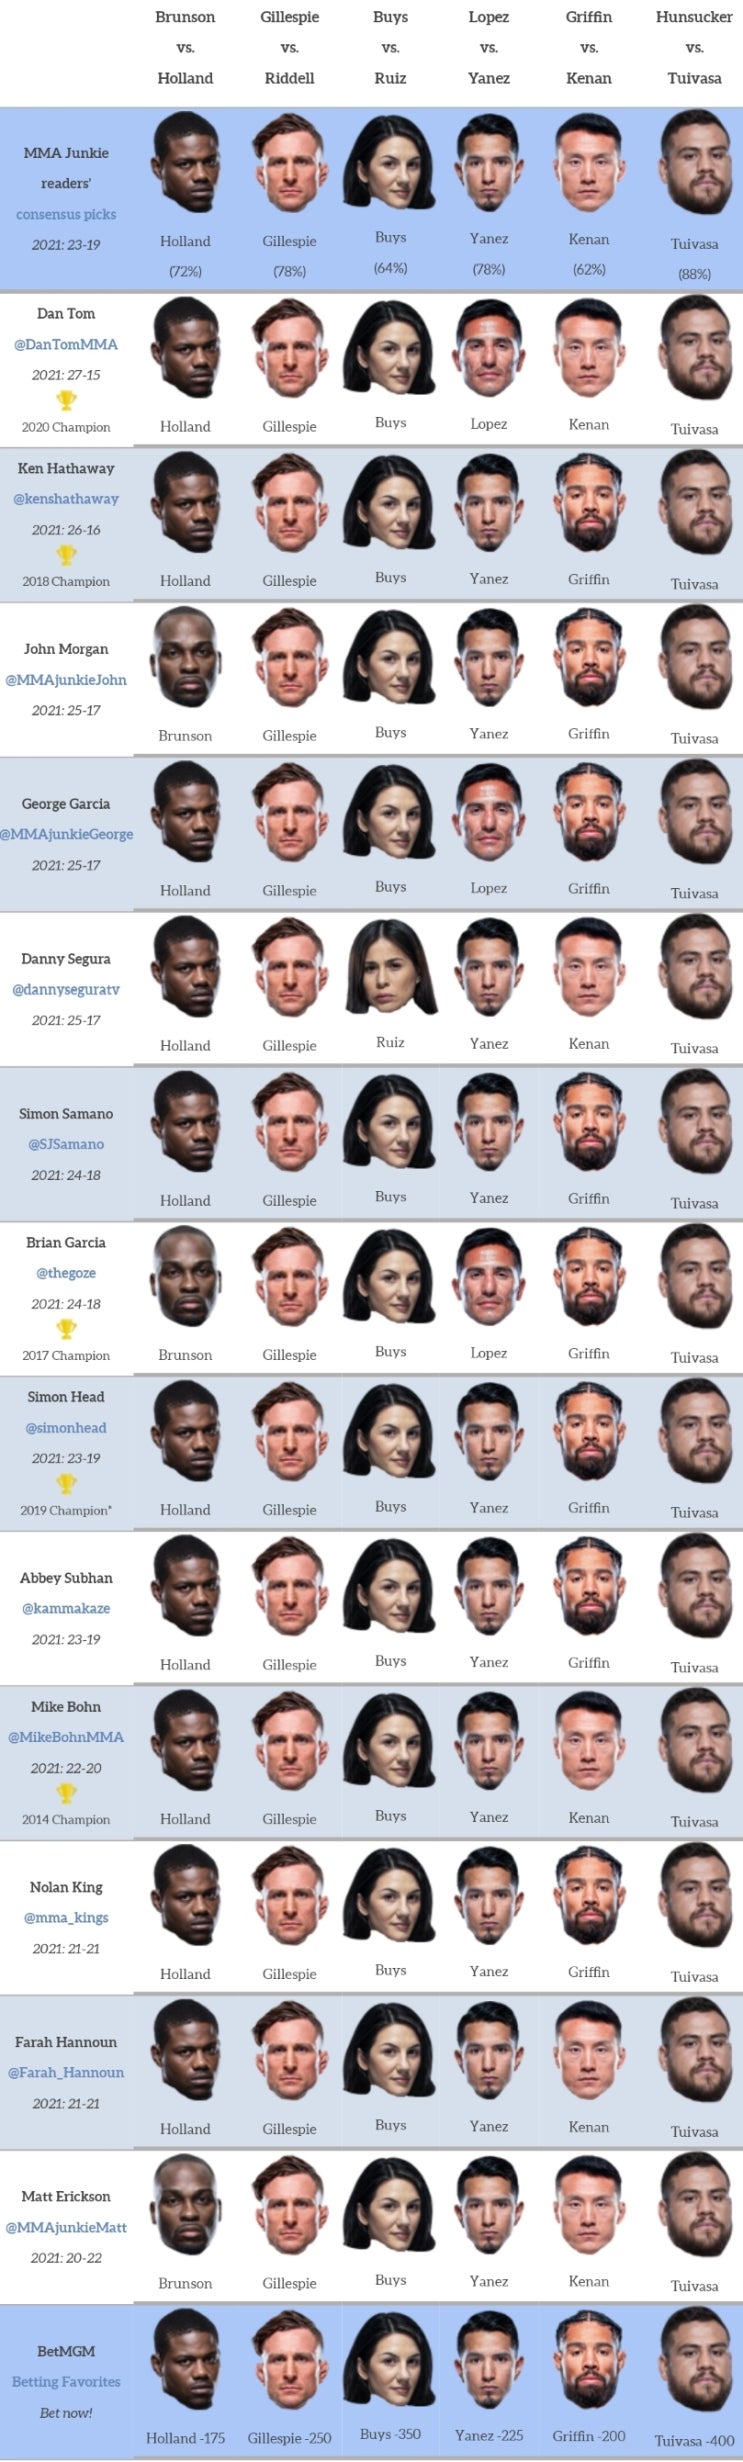 UFC 베가스 22: 브런슨 vs 홀랜드 프리뷰(미디어 예상 및 배당률)